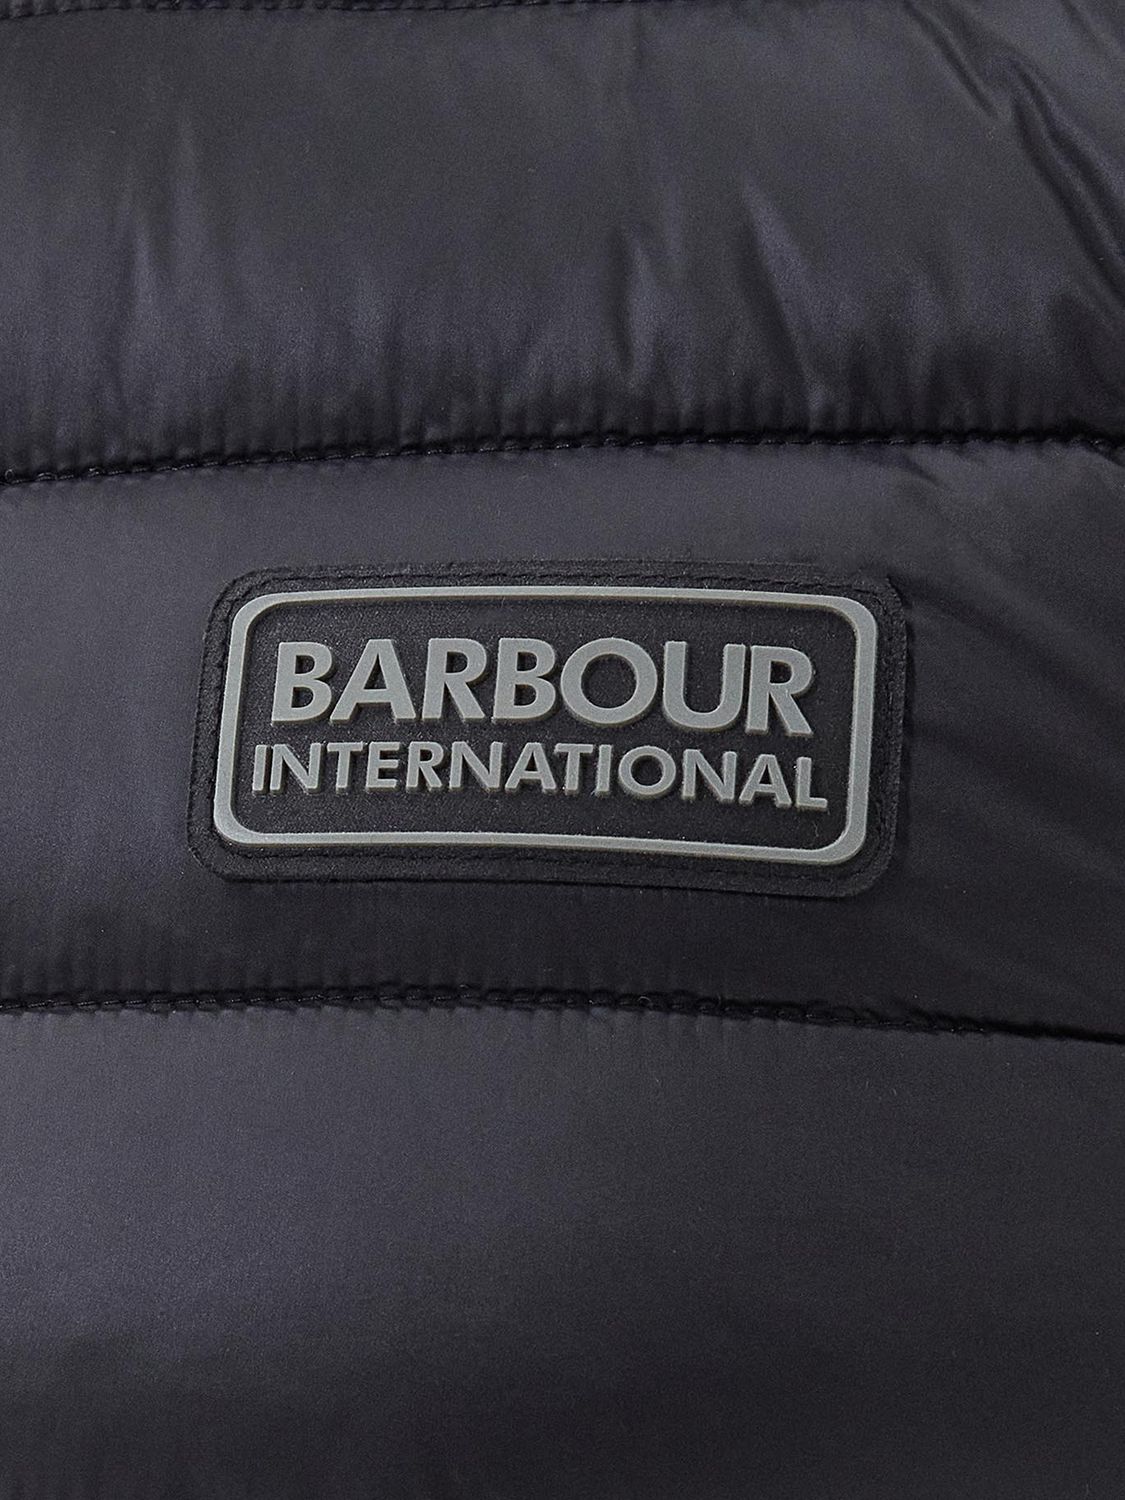 Barbour International Tourer Reed Gilet, Black, S